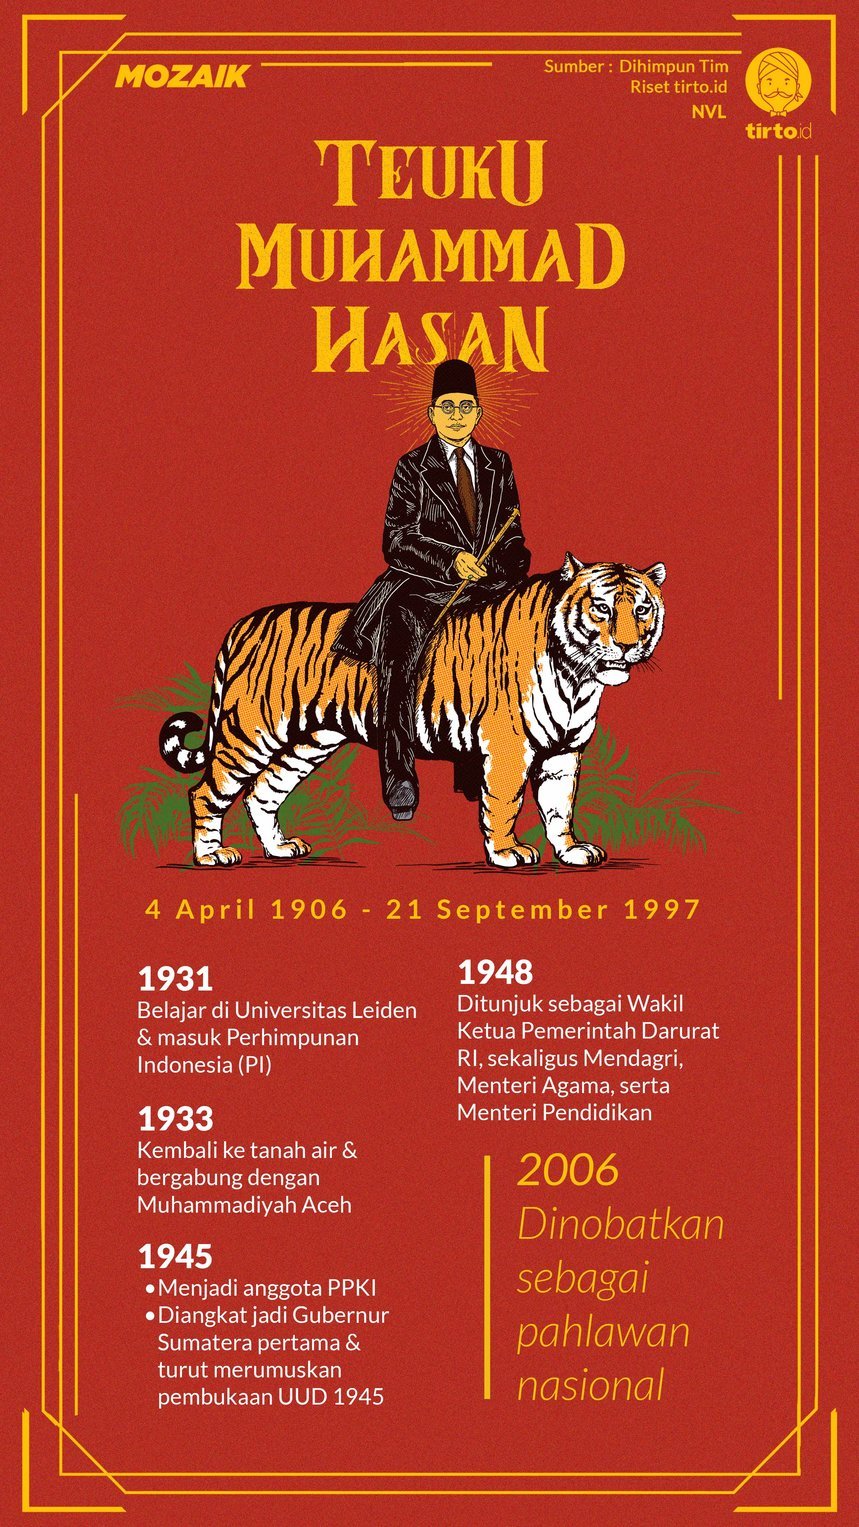 Infografik Mozaik Teuku Muhammad Hasan